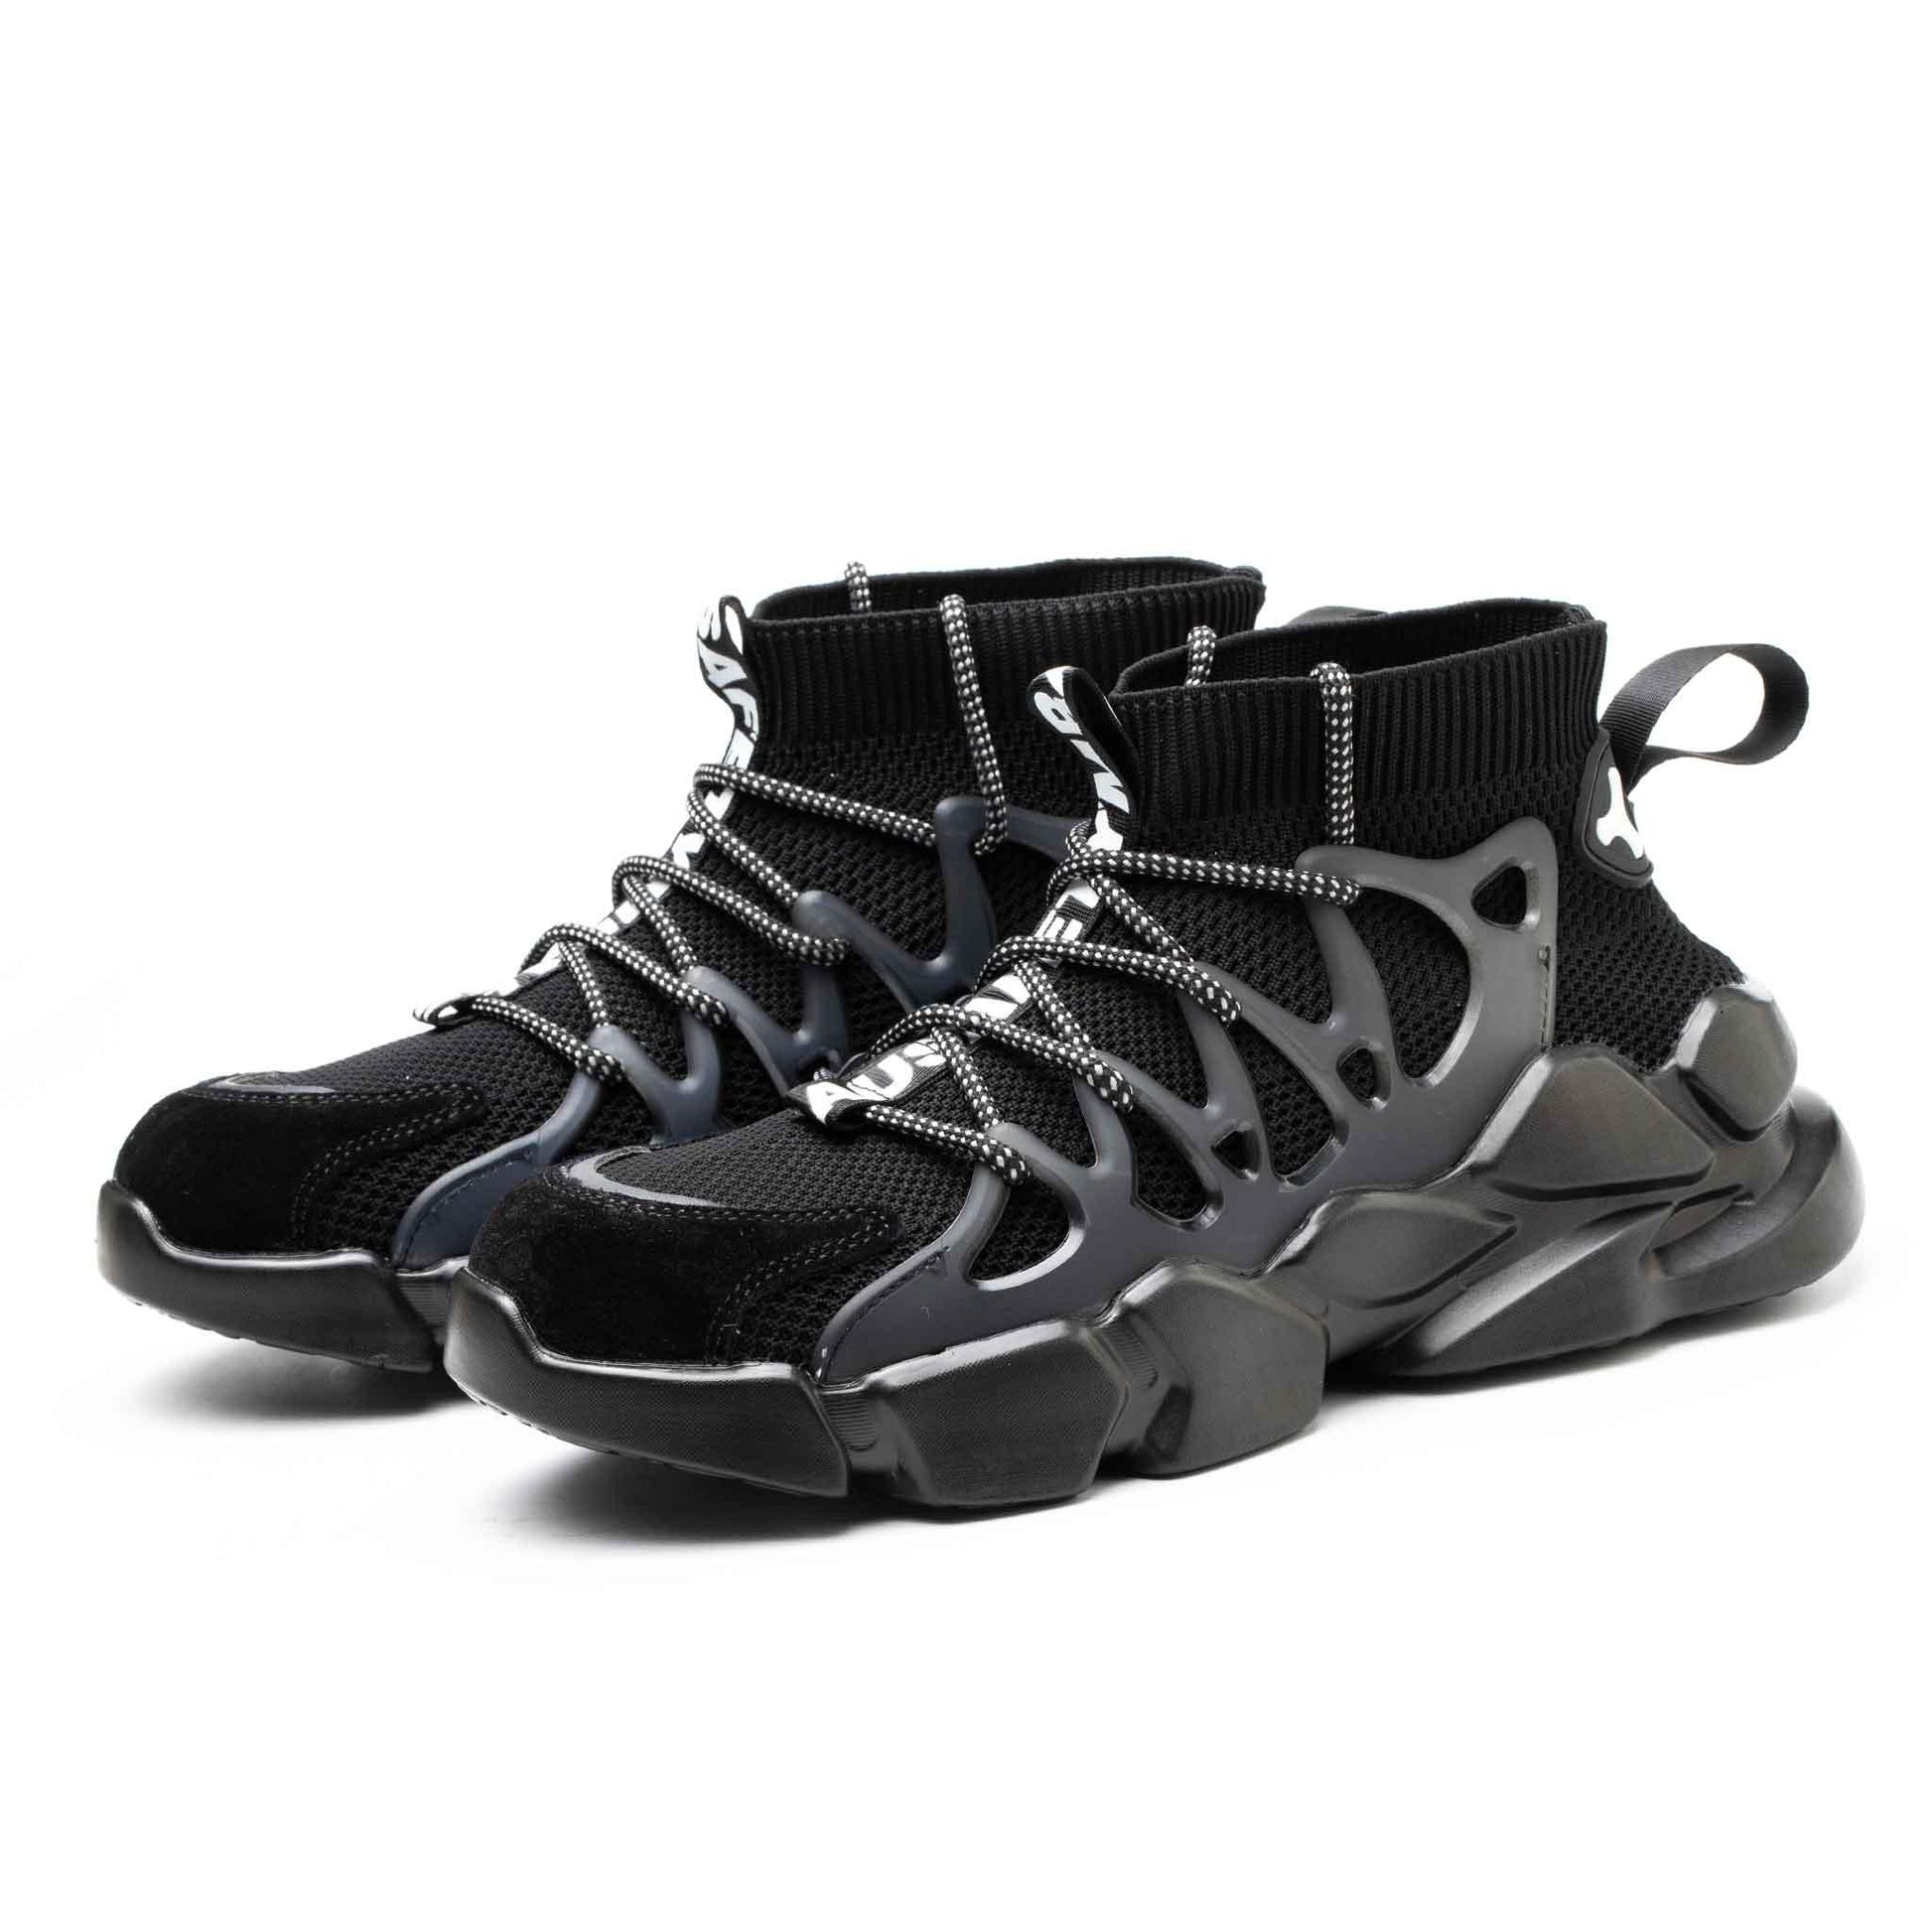 Men's Comp Toe Sneakers - Shock Absorbing | B186 - USINE PRO Footwear